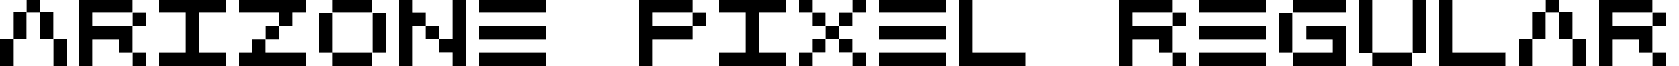 Arizone Pixel Regular arizone-pixel.ttf